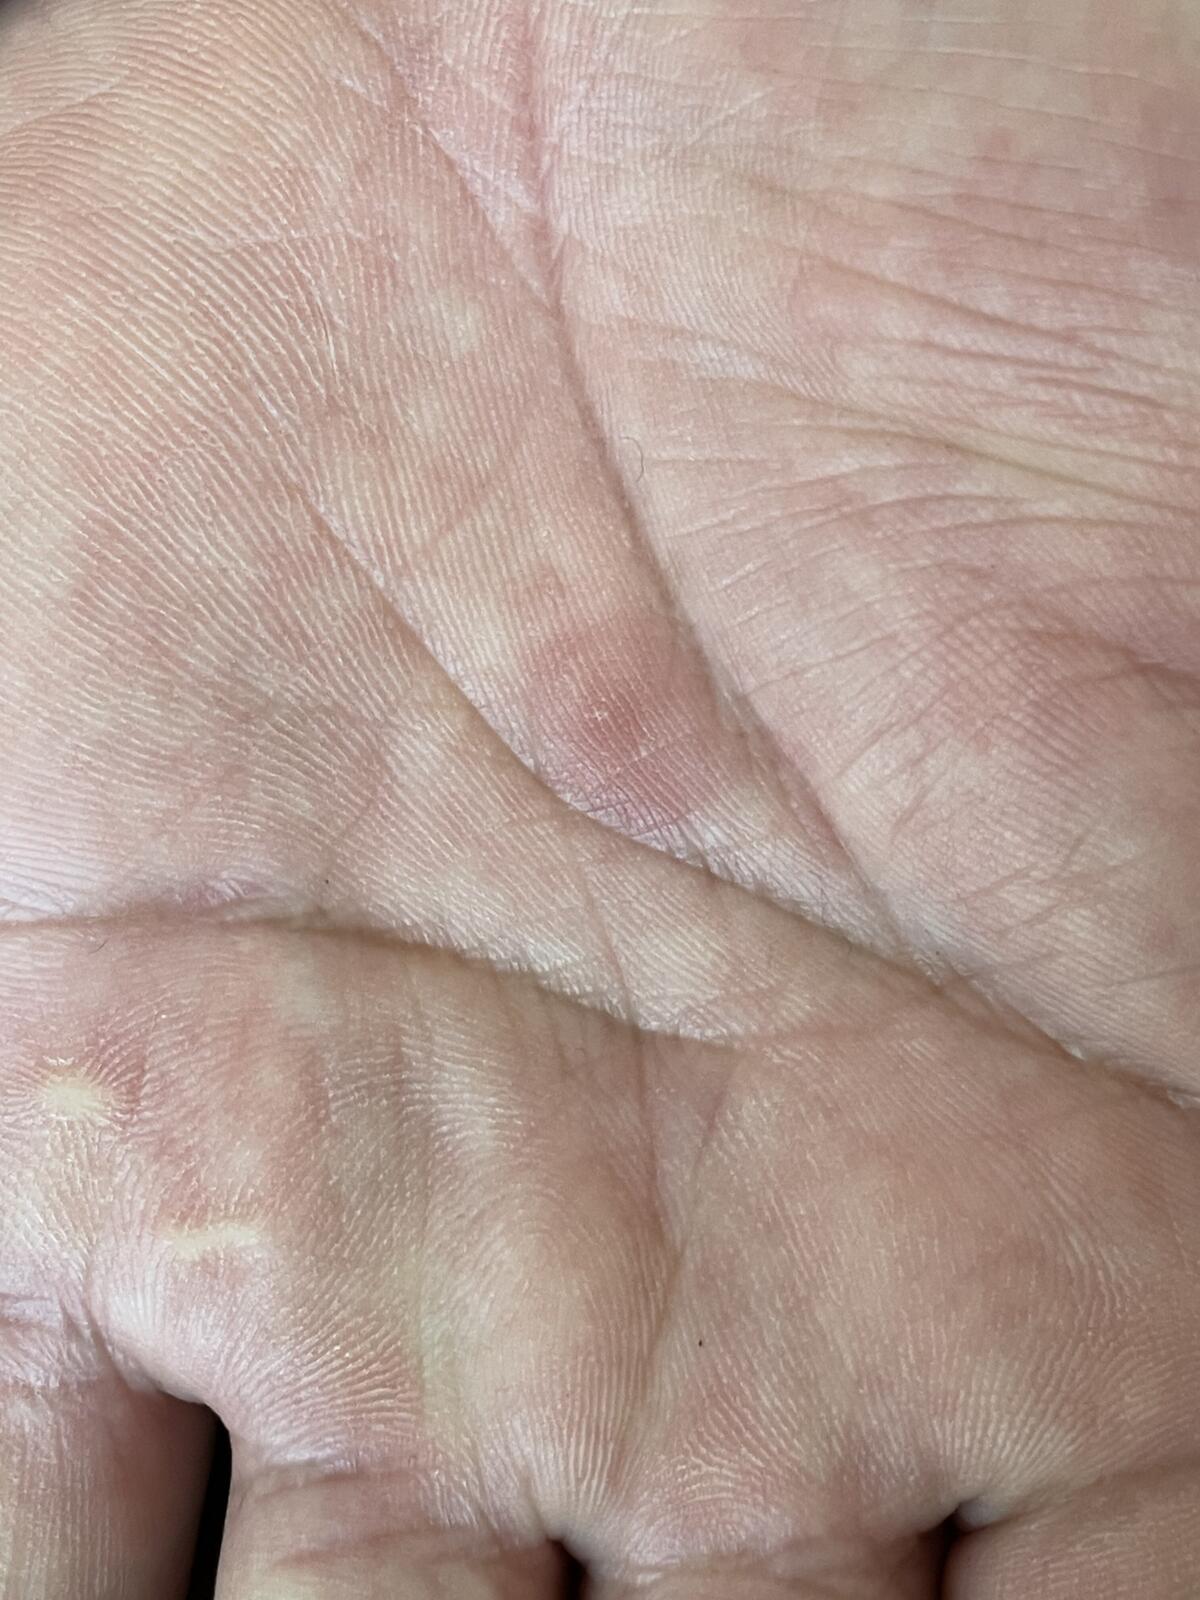 梅毒手部症状图片图片